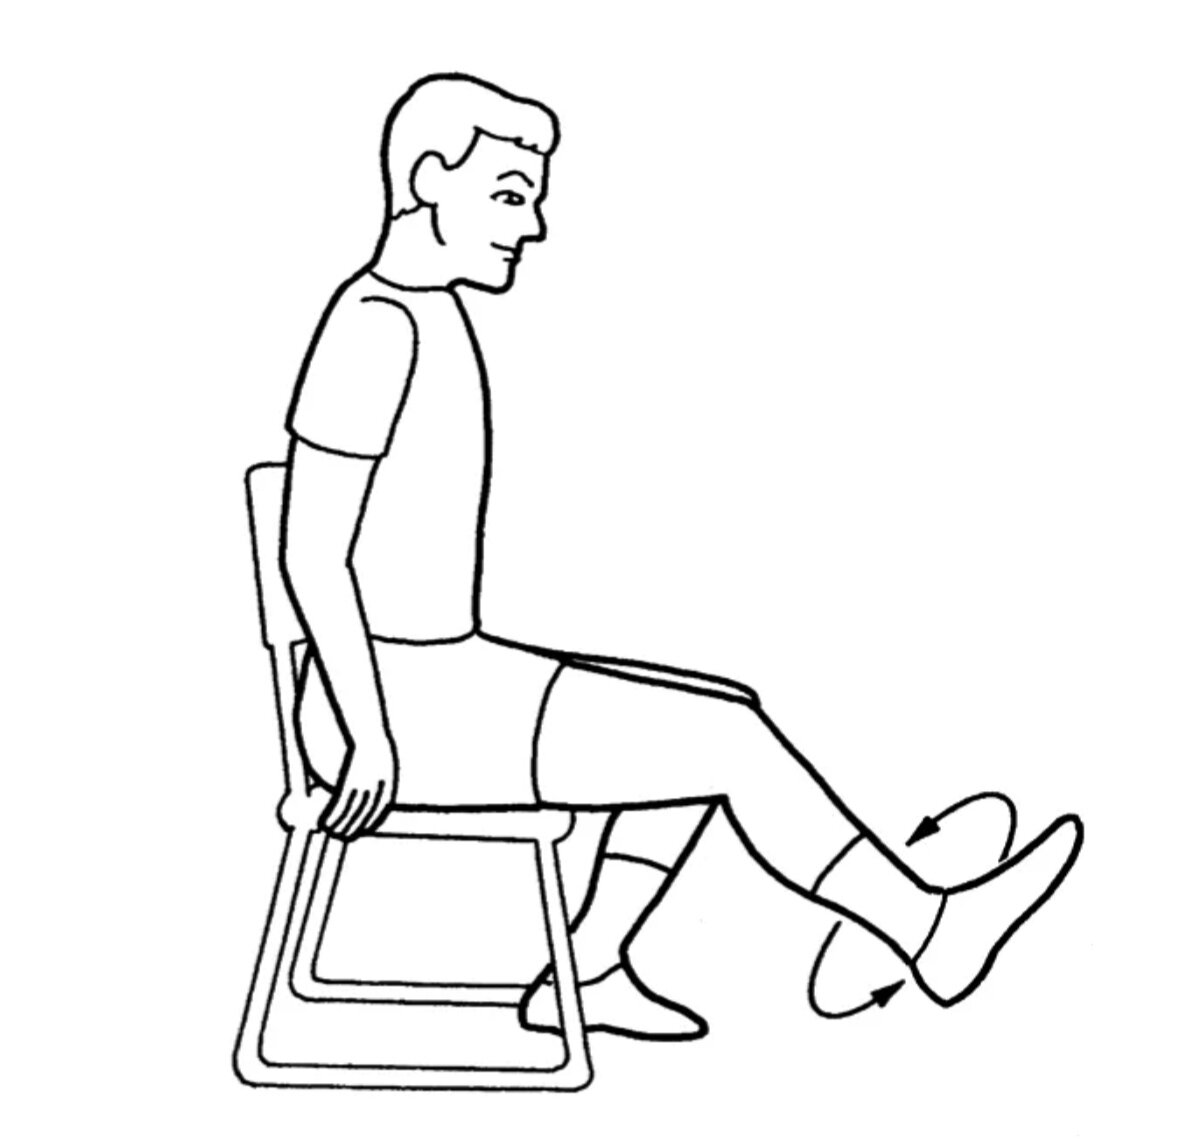 Разгибание голеностопного сустава. Упражнения на стуле. Упражнение для коленного сустава сидя. Круговые движения стопами. Упражнения сидя на стуле.